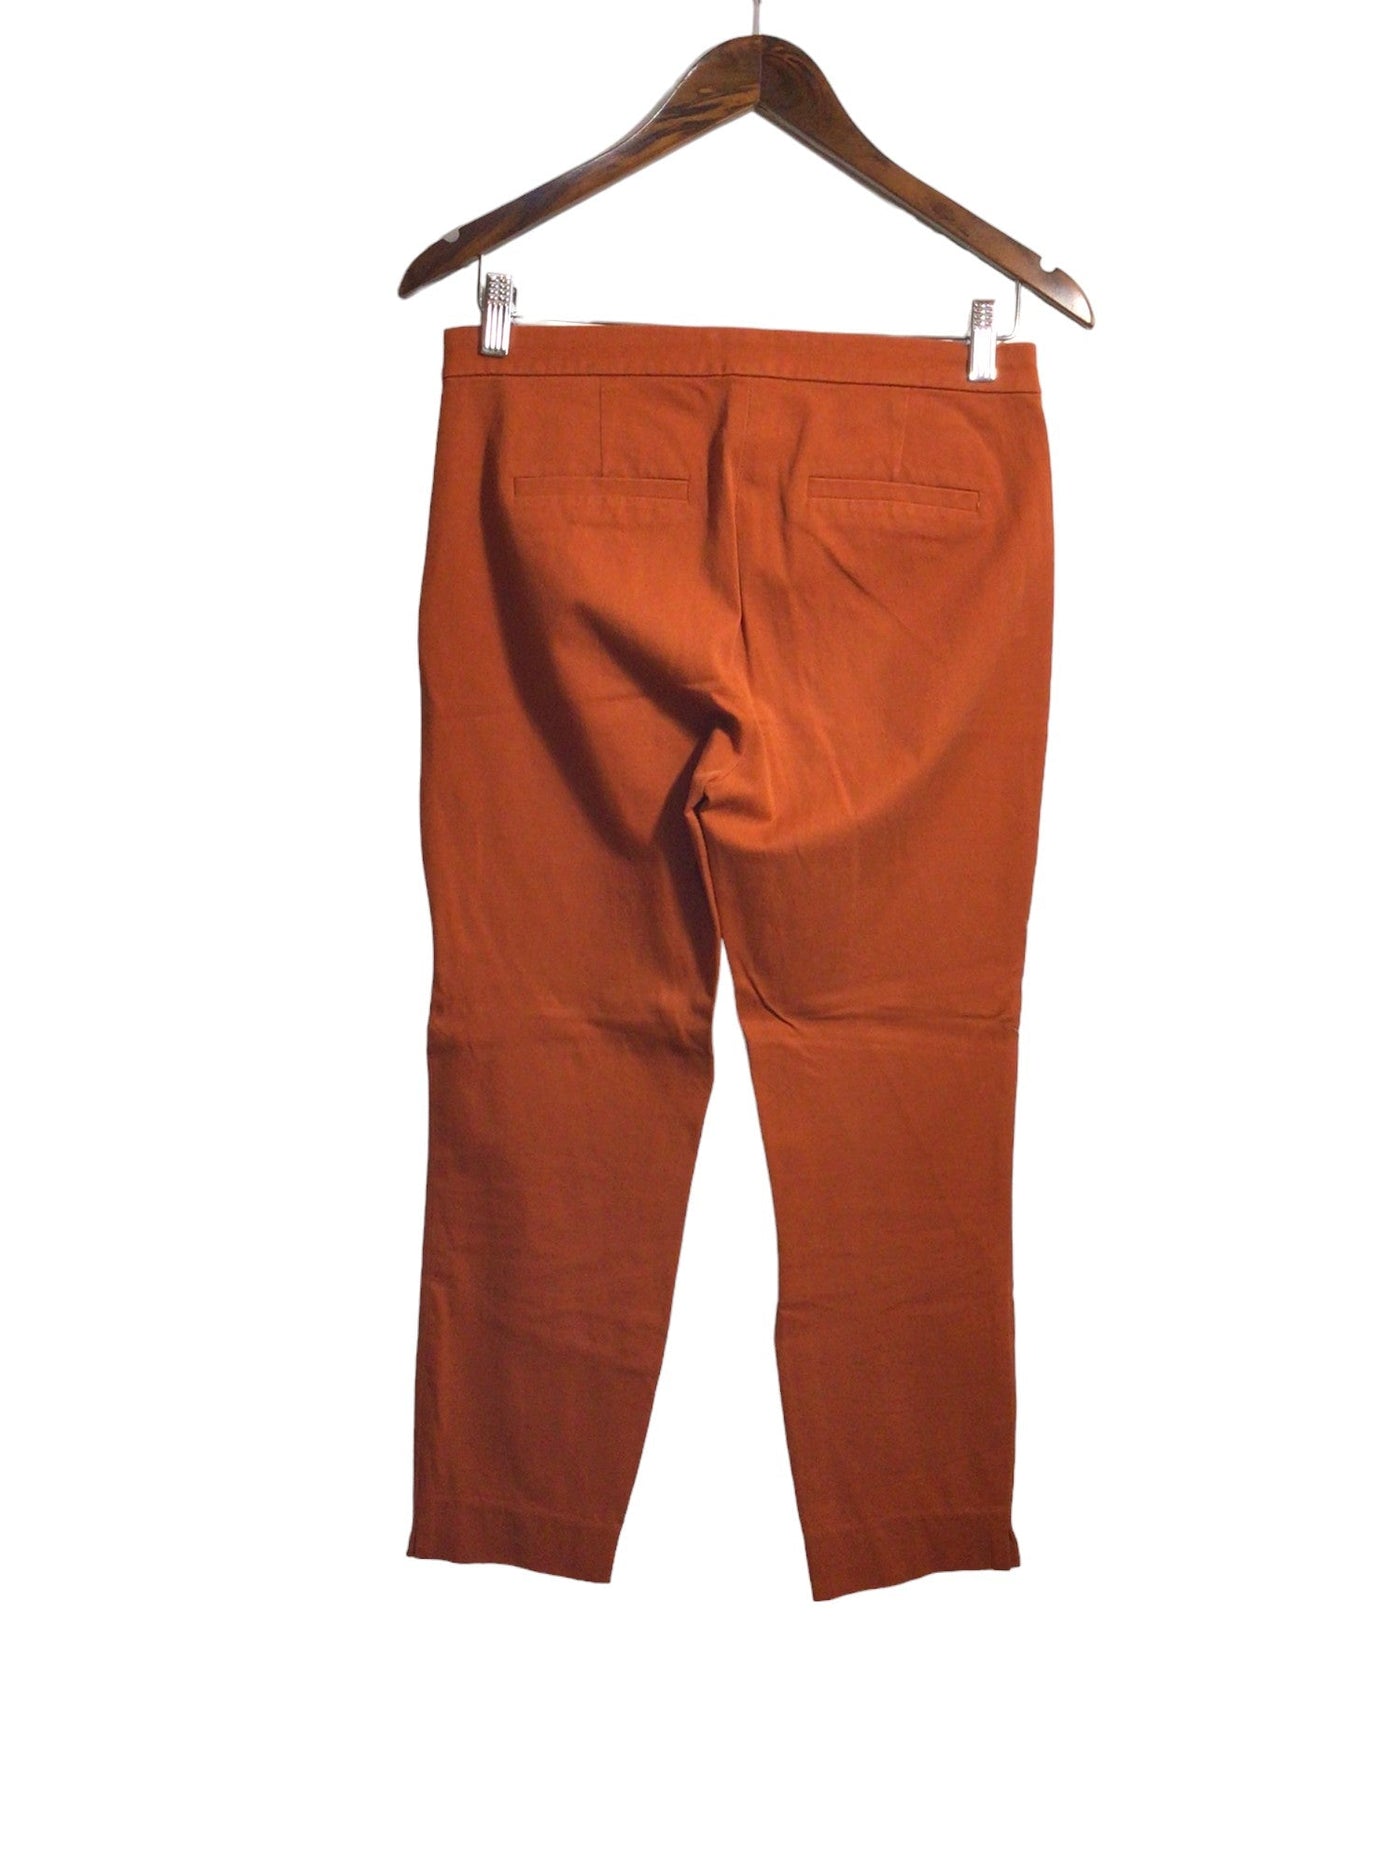 J. CREW Women Work Pants Regular fit in Orange - Size 4 | 34.5 $ KOOP